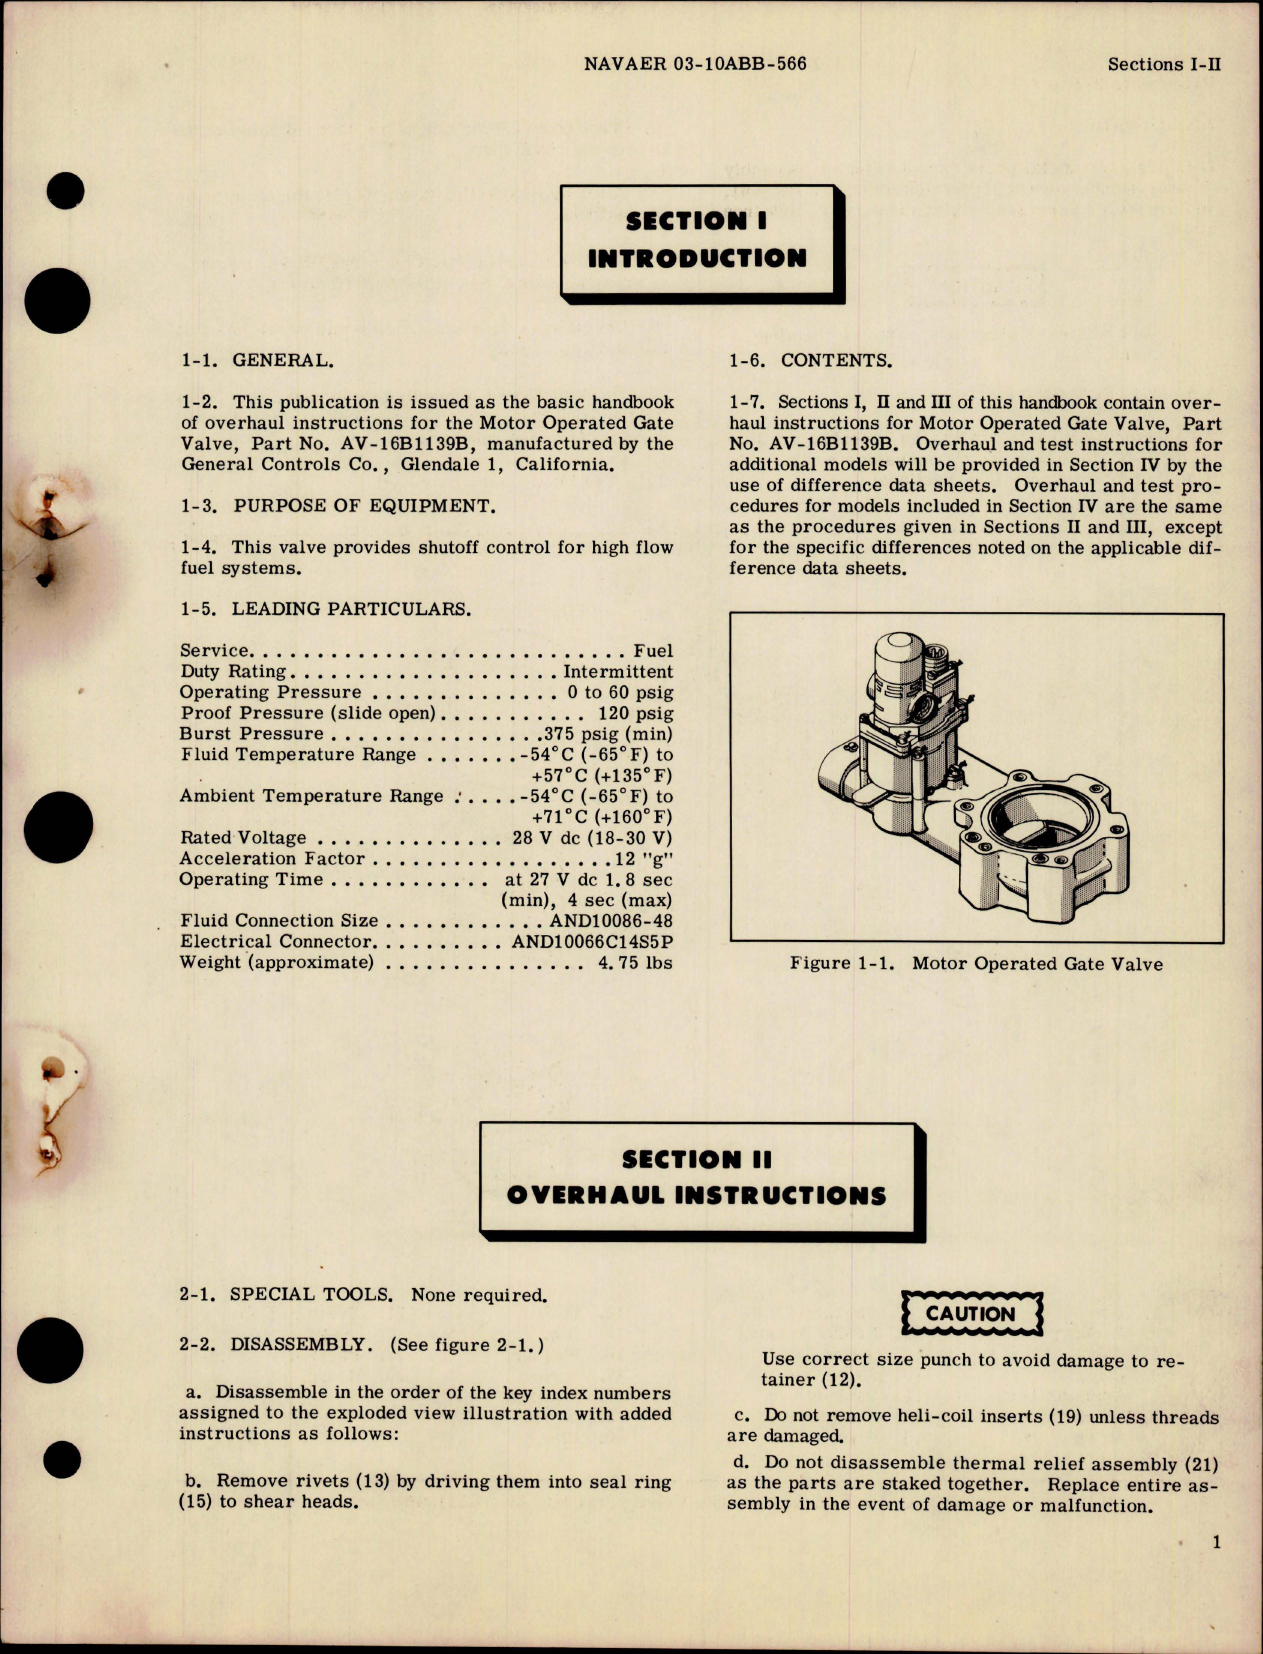 Sample page 5 from AirCorps Library document: Overhaul Instructions for Motor Operated Gate Valve - AV-16B Series - Part AV-16B1139B and Similar Valves